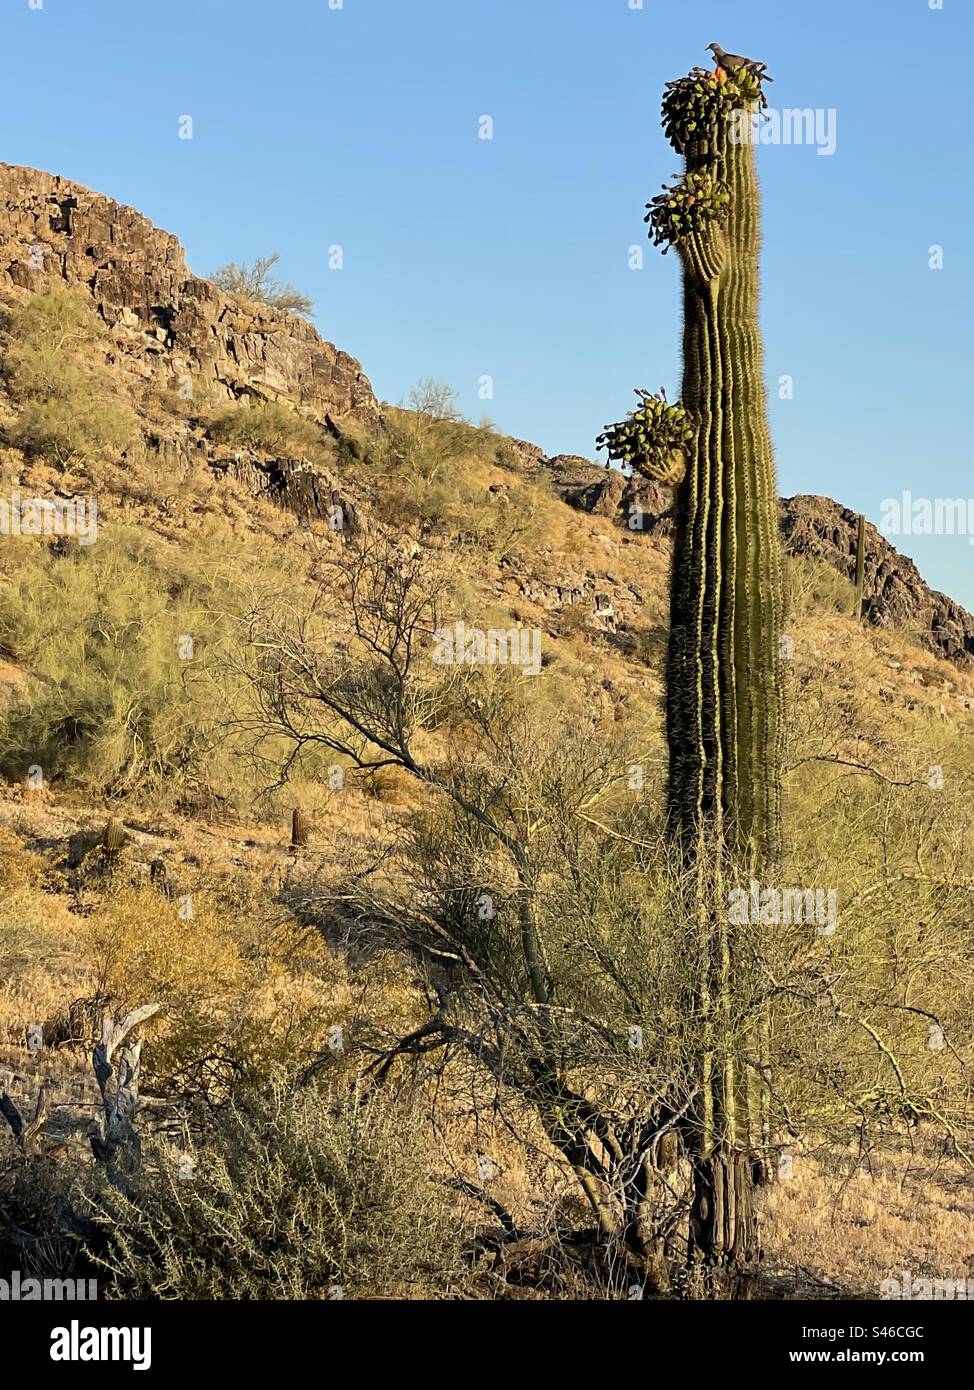 Colombes à ailes blanches, fruits de cactus Red Saguaro, desserts du désert de Sonora pour la faune, ciel bleu brillant, réserve des montagnes de Phoenix, Arizona Banque D'Images